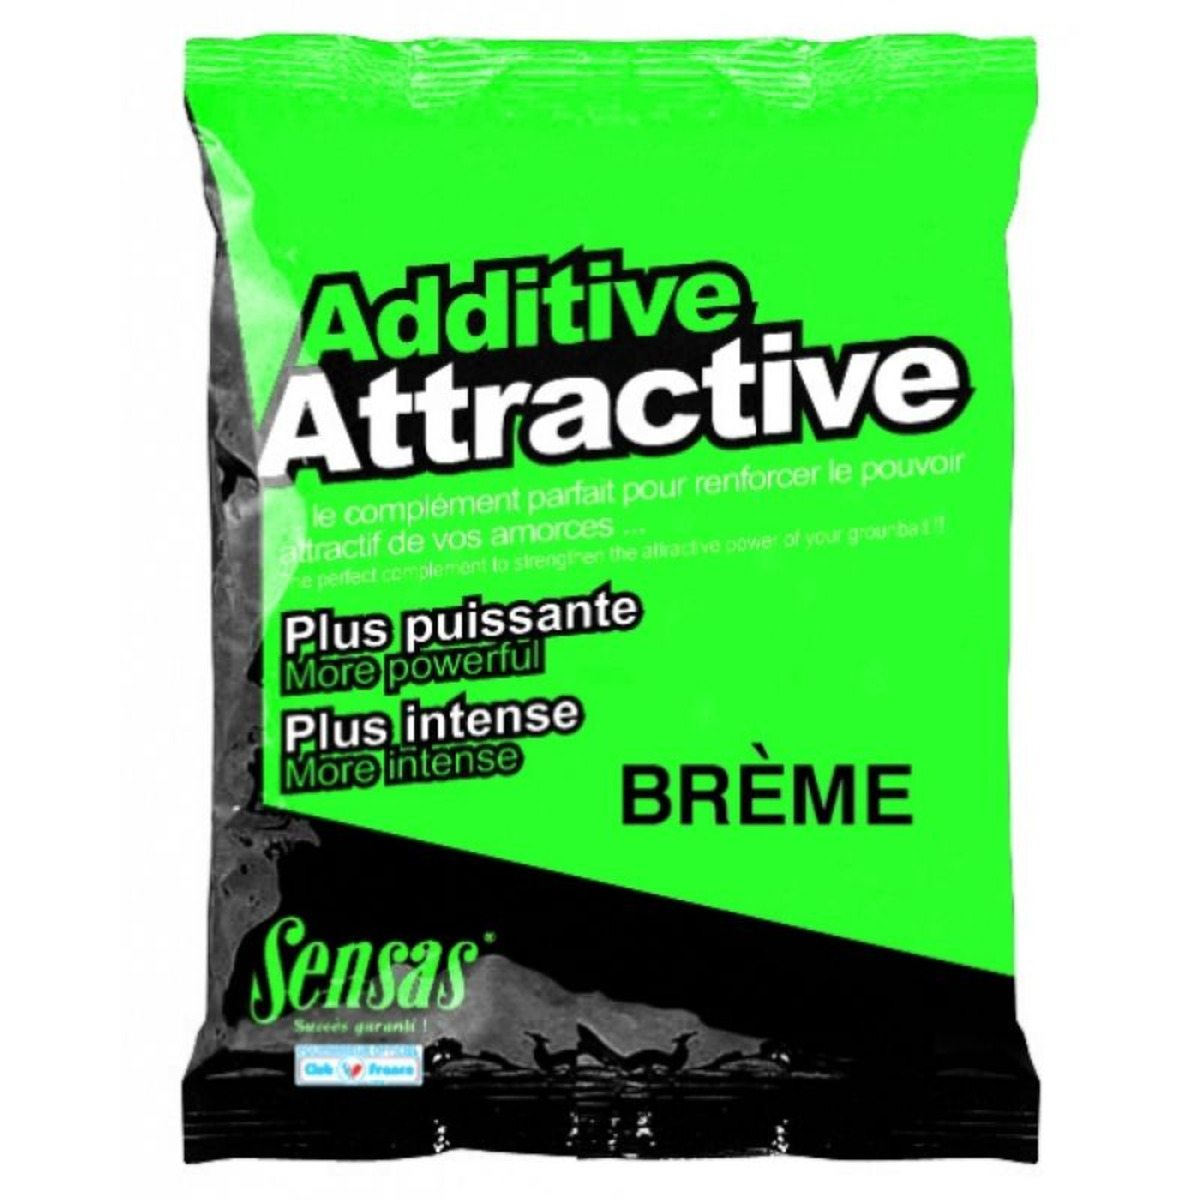 Sensas Additivo Attractive - Breme - 250 g